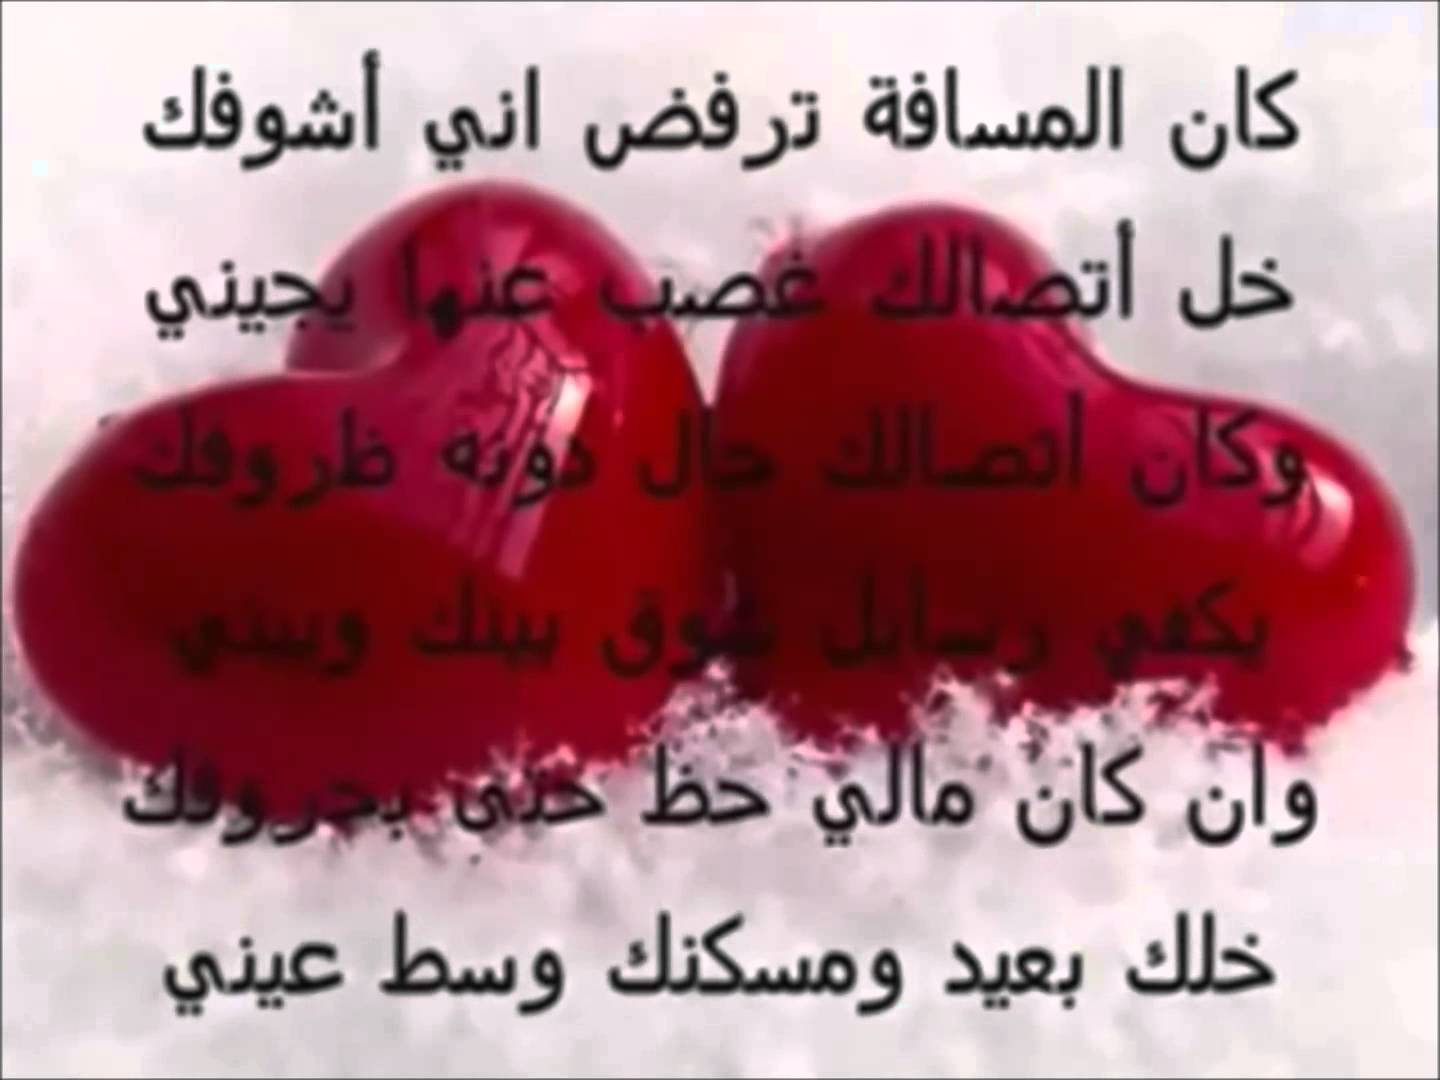 1883 1 رسائل رومانسية - كلمات عن الحب تحفة نسايم السعودية